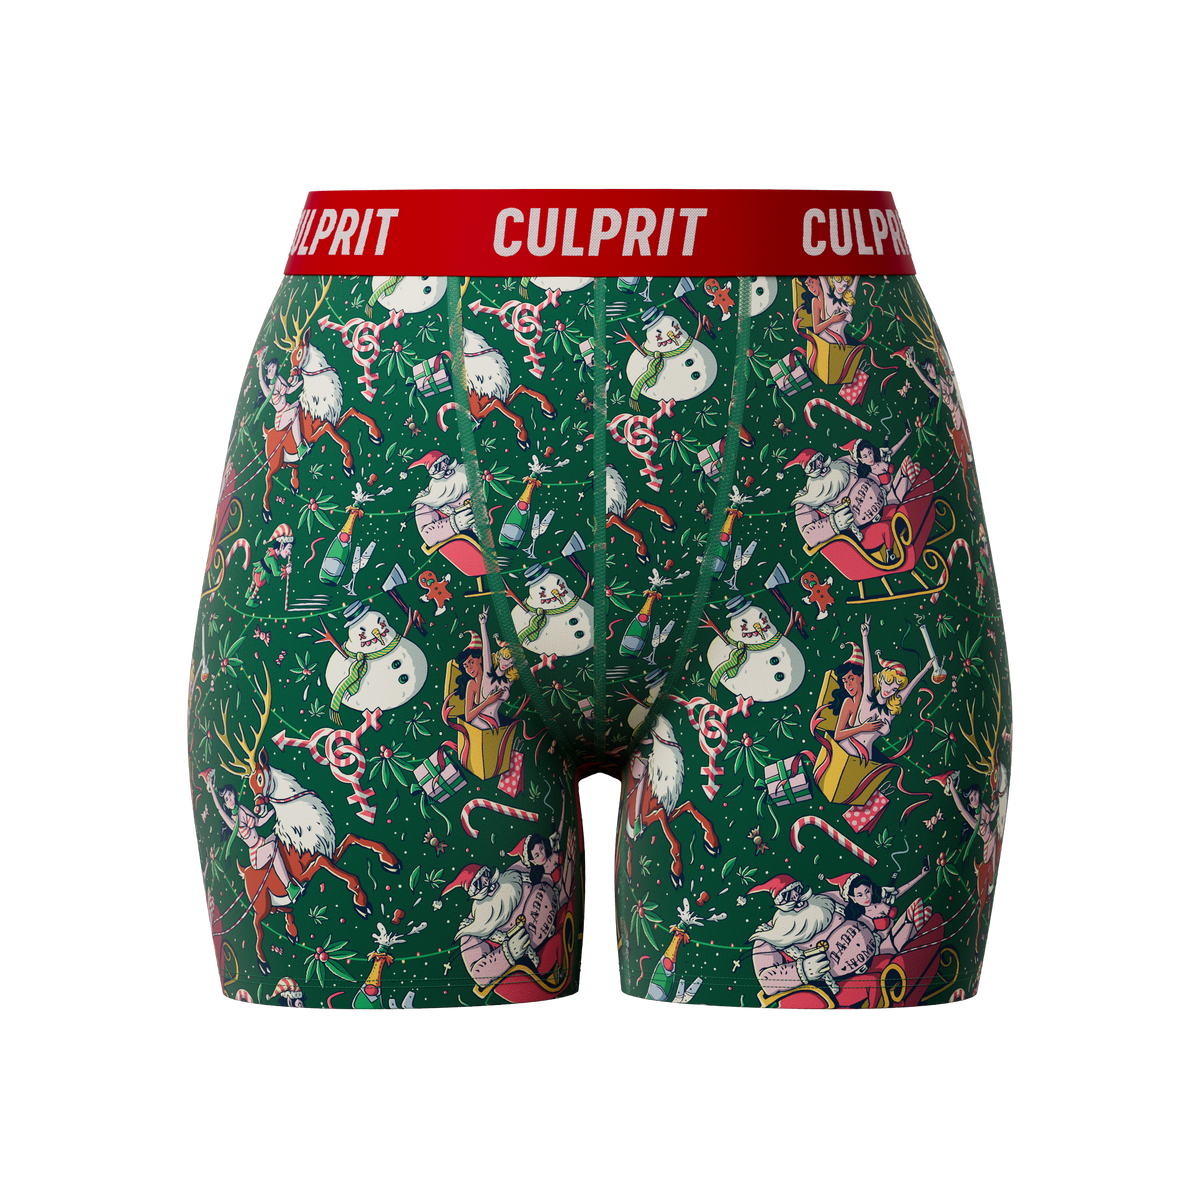 A Very Culprit Christmas – Culprit Underwear